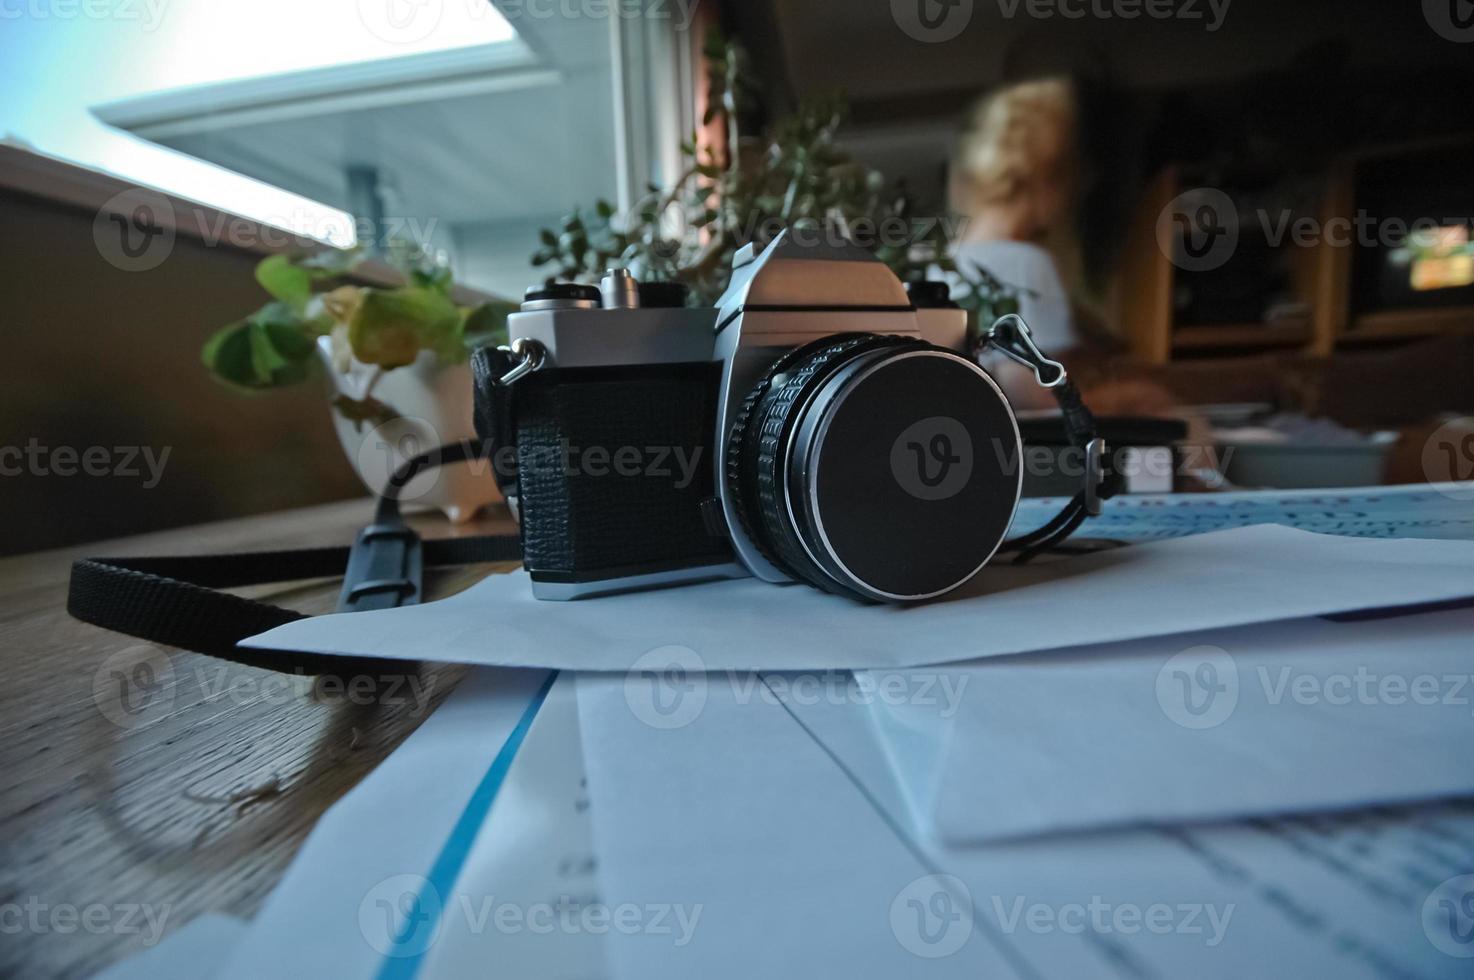 analogico in metallo classico vintage manuale a lente singola riflette la fotocamera su una pila di documenti in un soggiorno foto